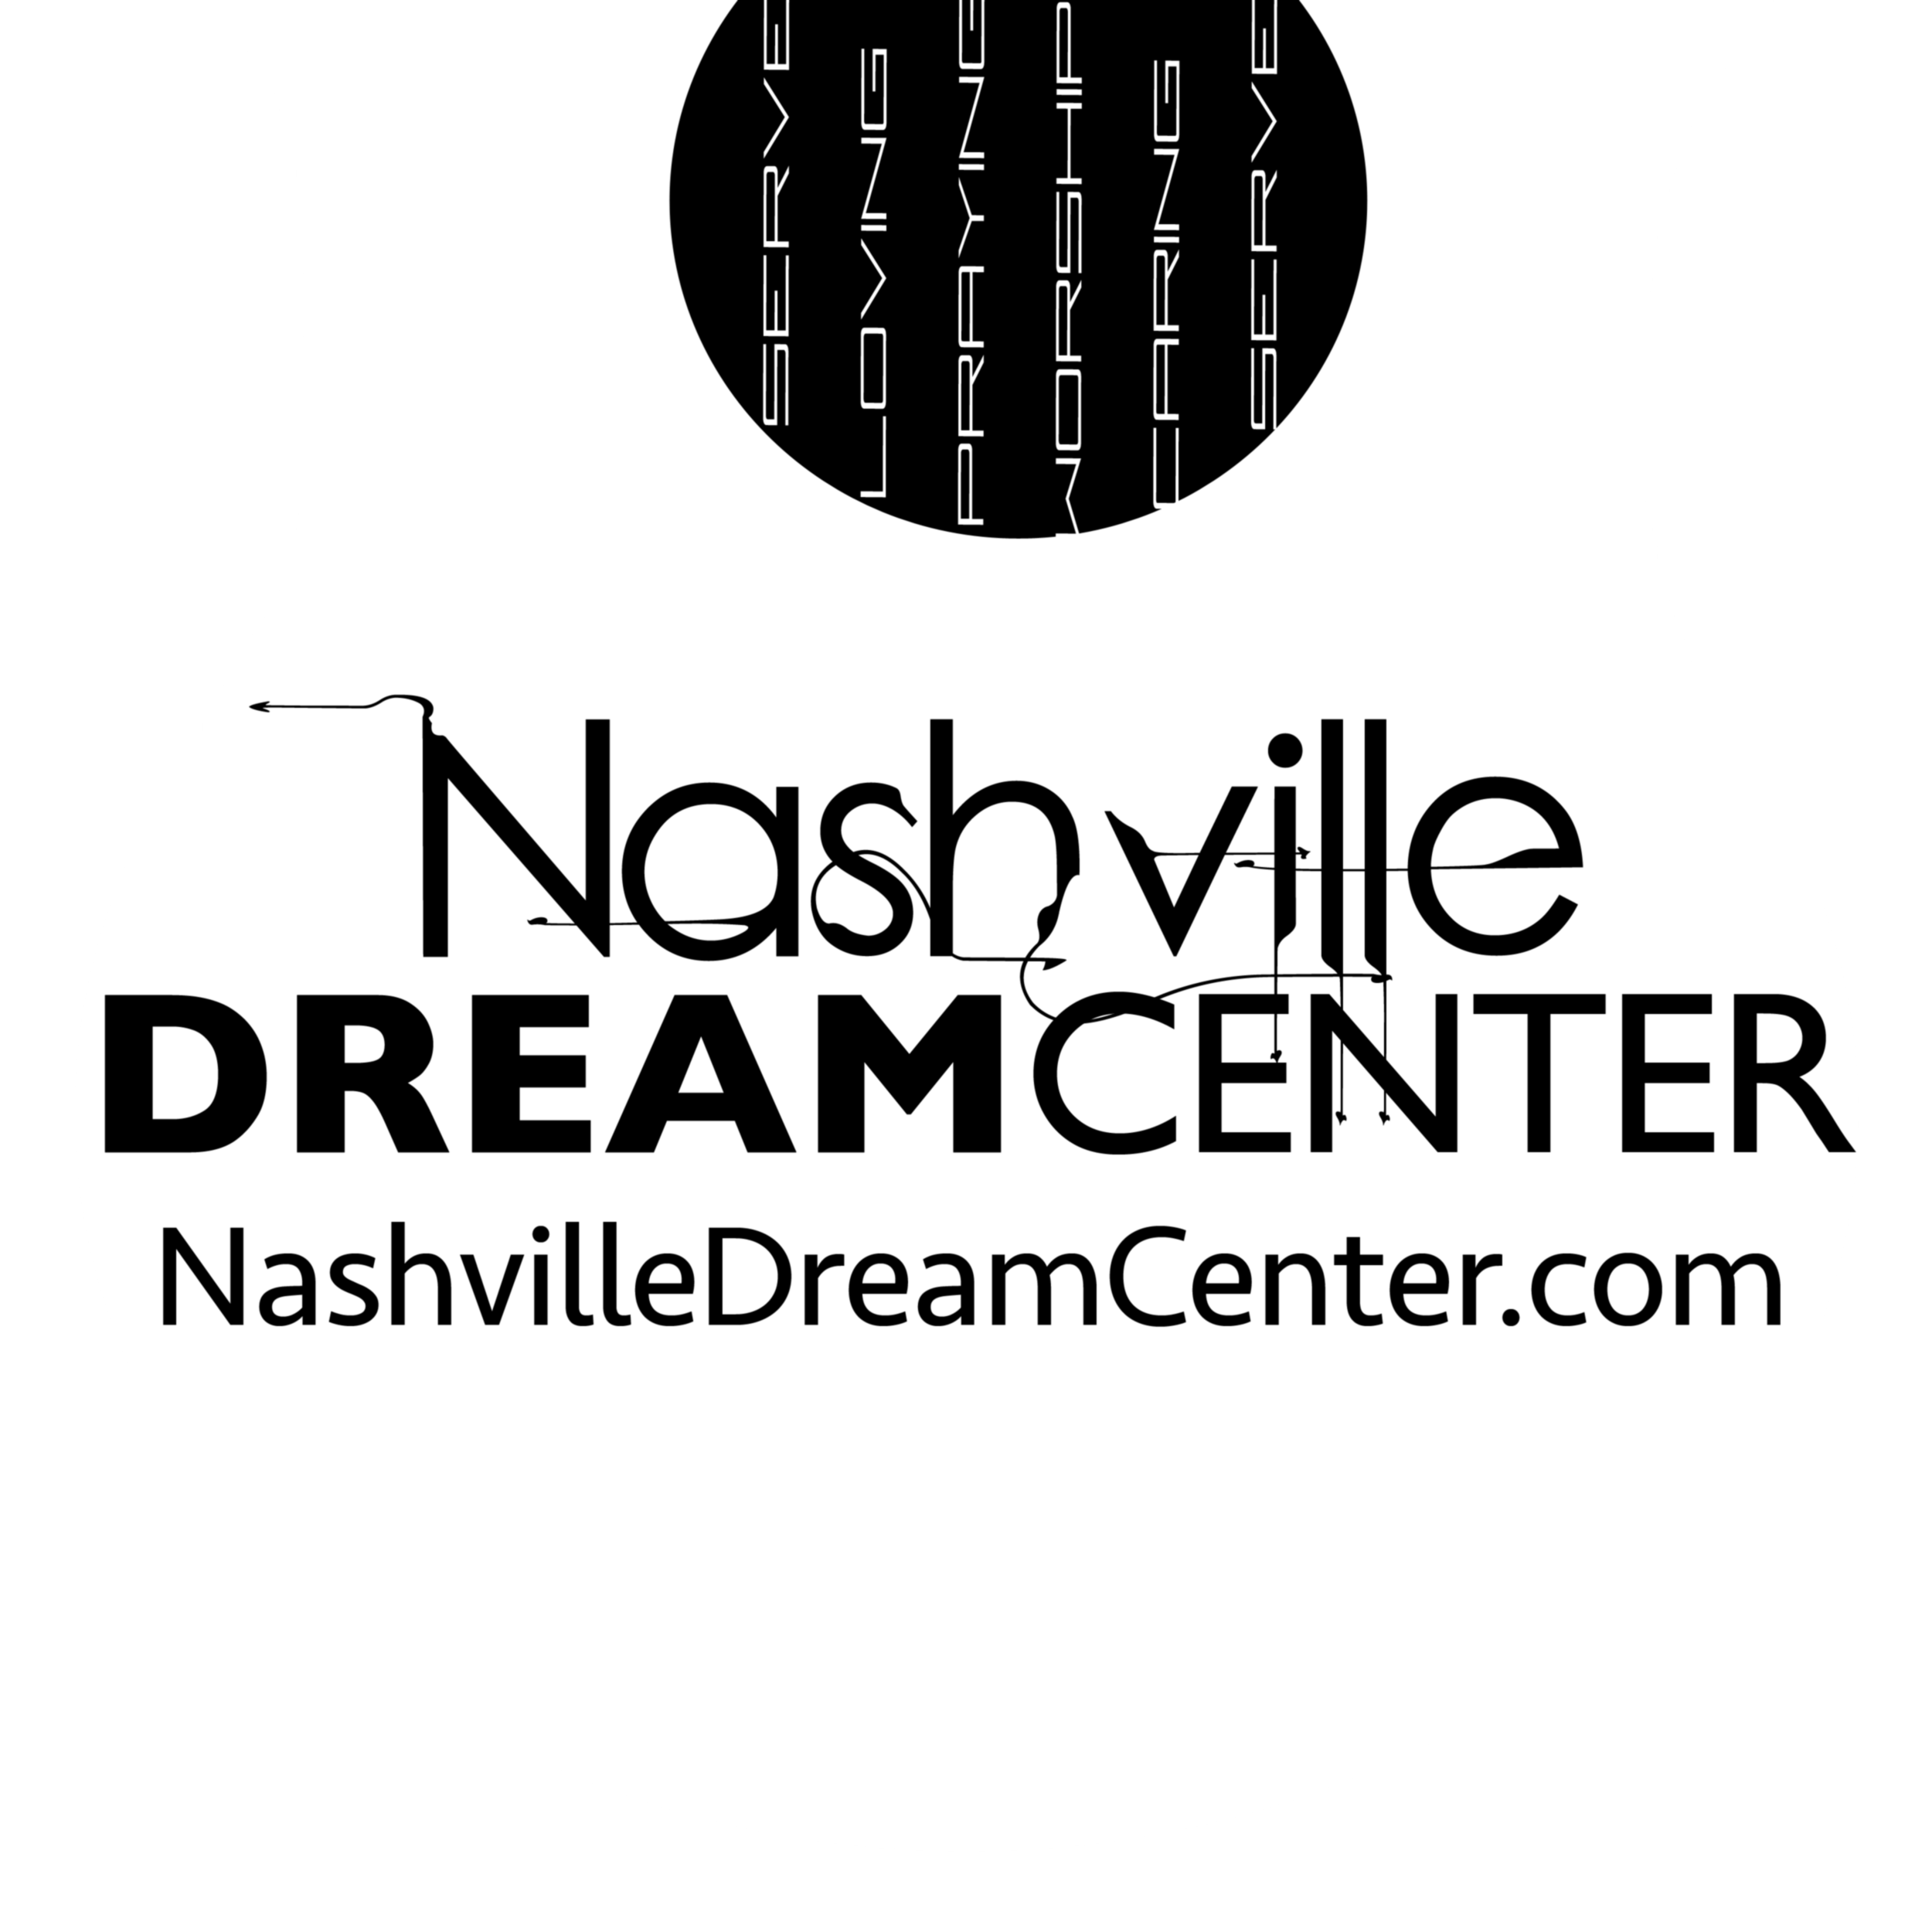 The Nashville Dream Center